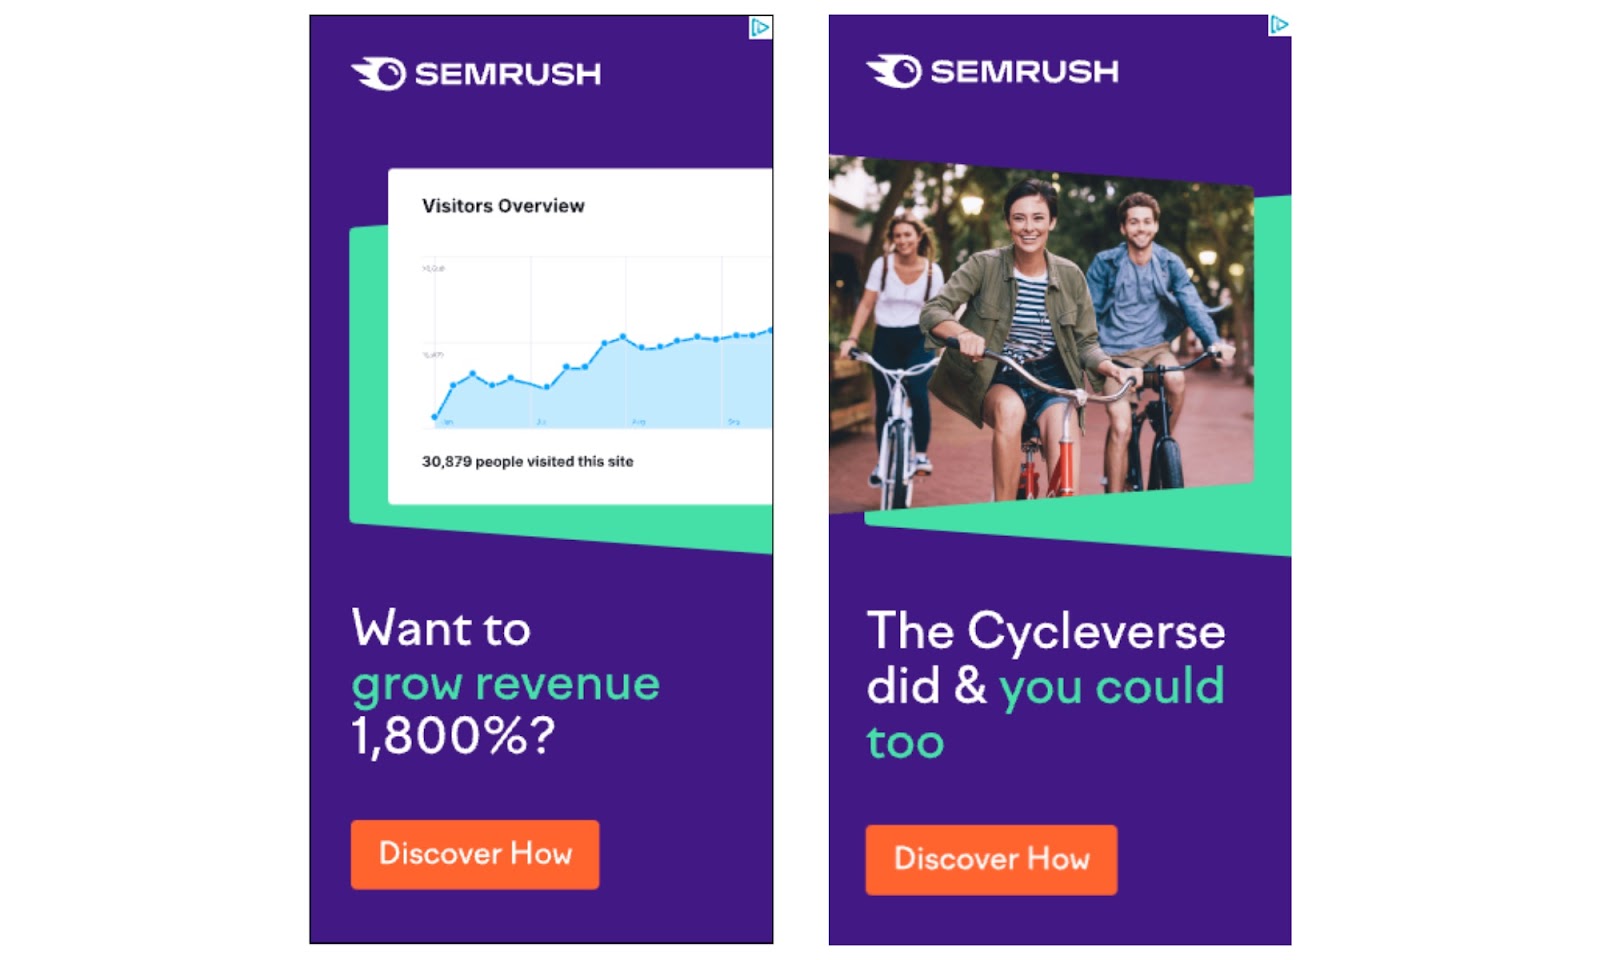 Semrush's display ad for Semrush tools